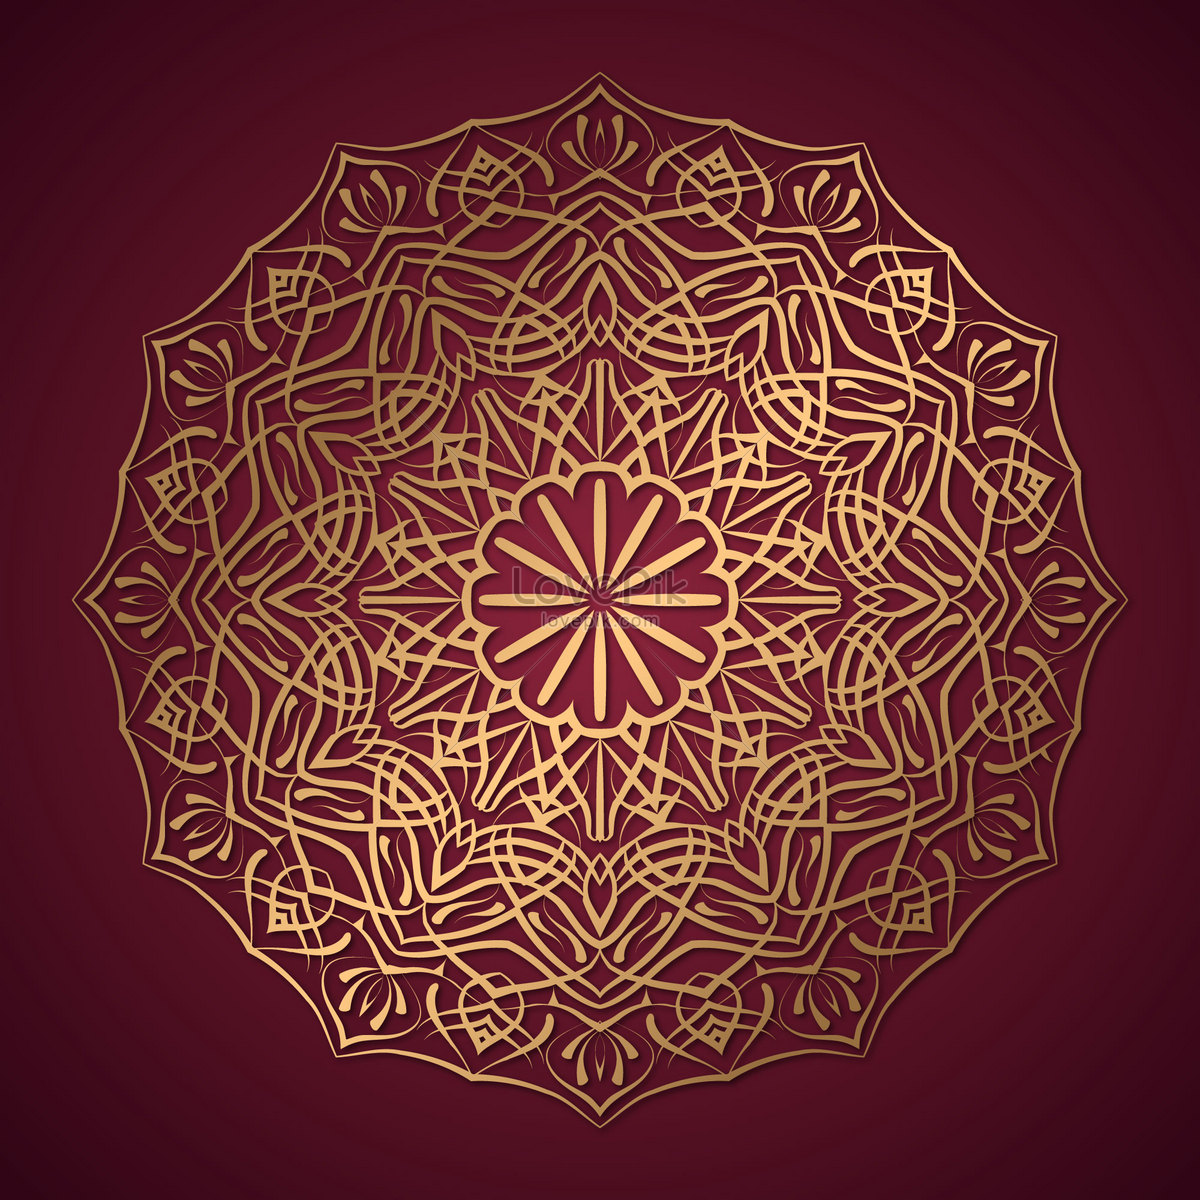 Hãy cùng khám phá vẻ đẹp tuyệt vời của hình nền Mandala, với những hoa văn tinh tế và màu sắc uyển chuyển, sẽ đưa bạn vào một trạng thái thư giãn và tĩnh lặng vô cùng thú vị.